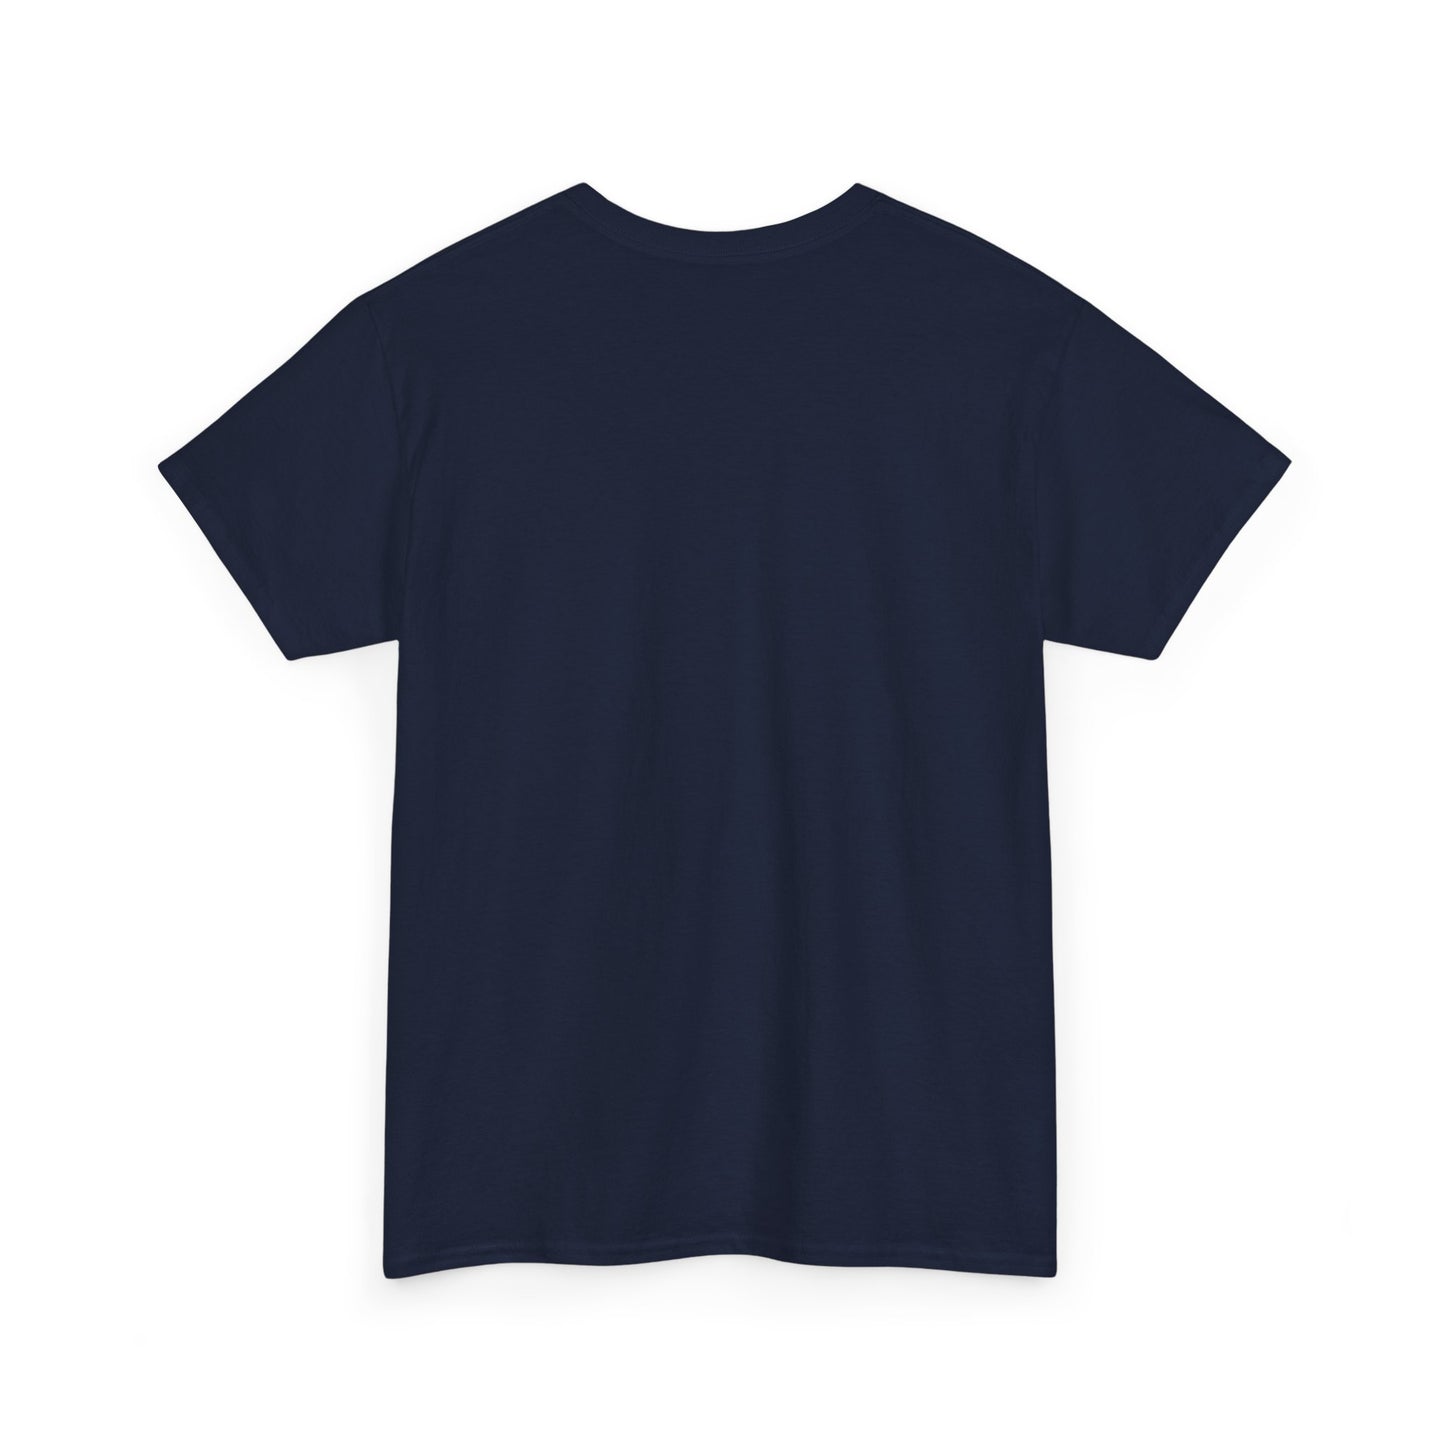 Unisex Heavy Cotton Graphic design (Working) T-shirt